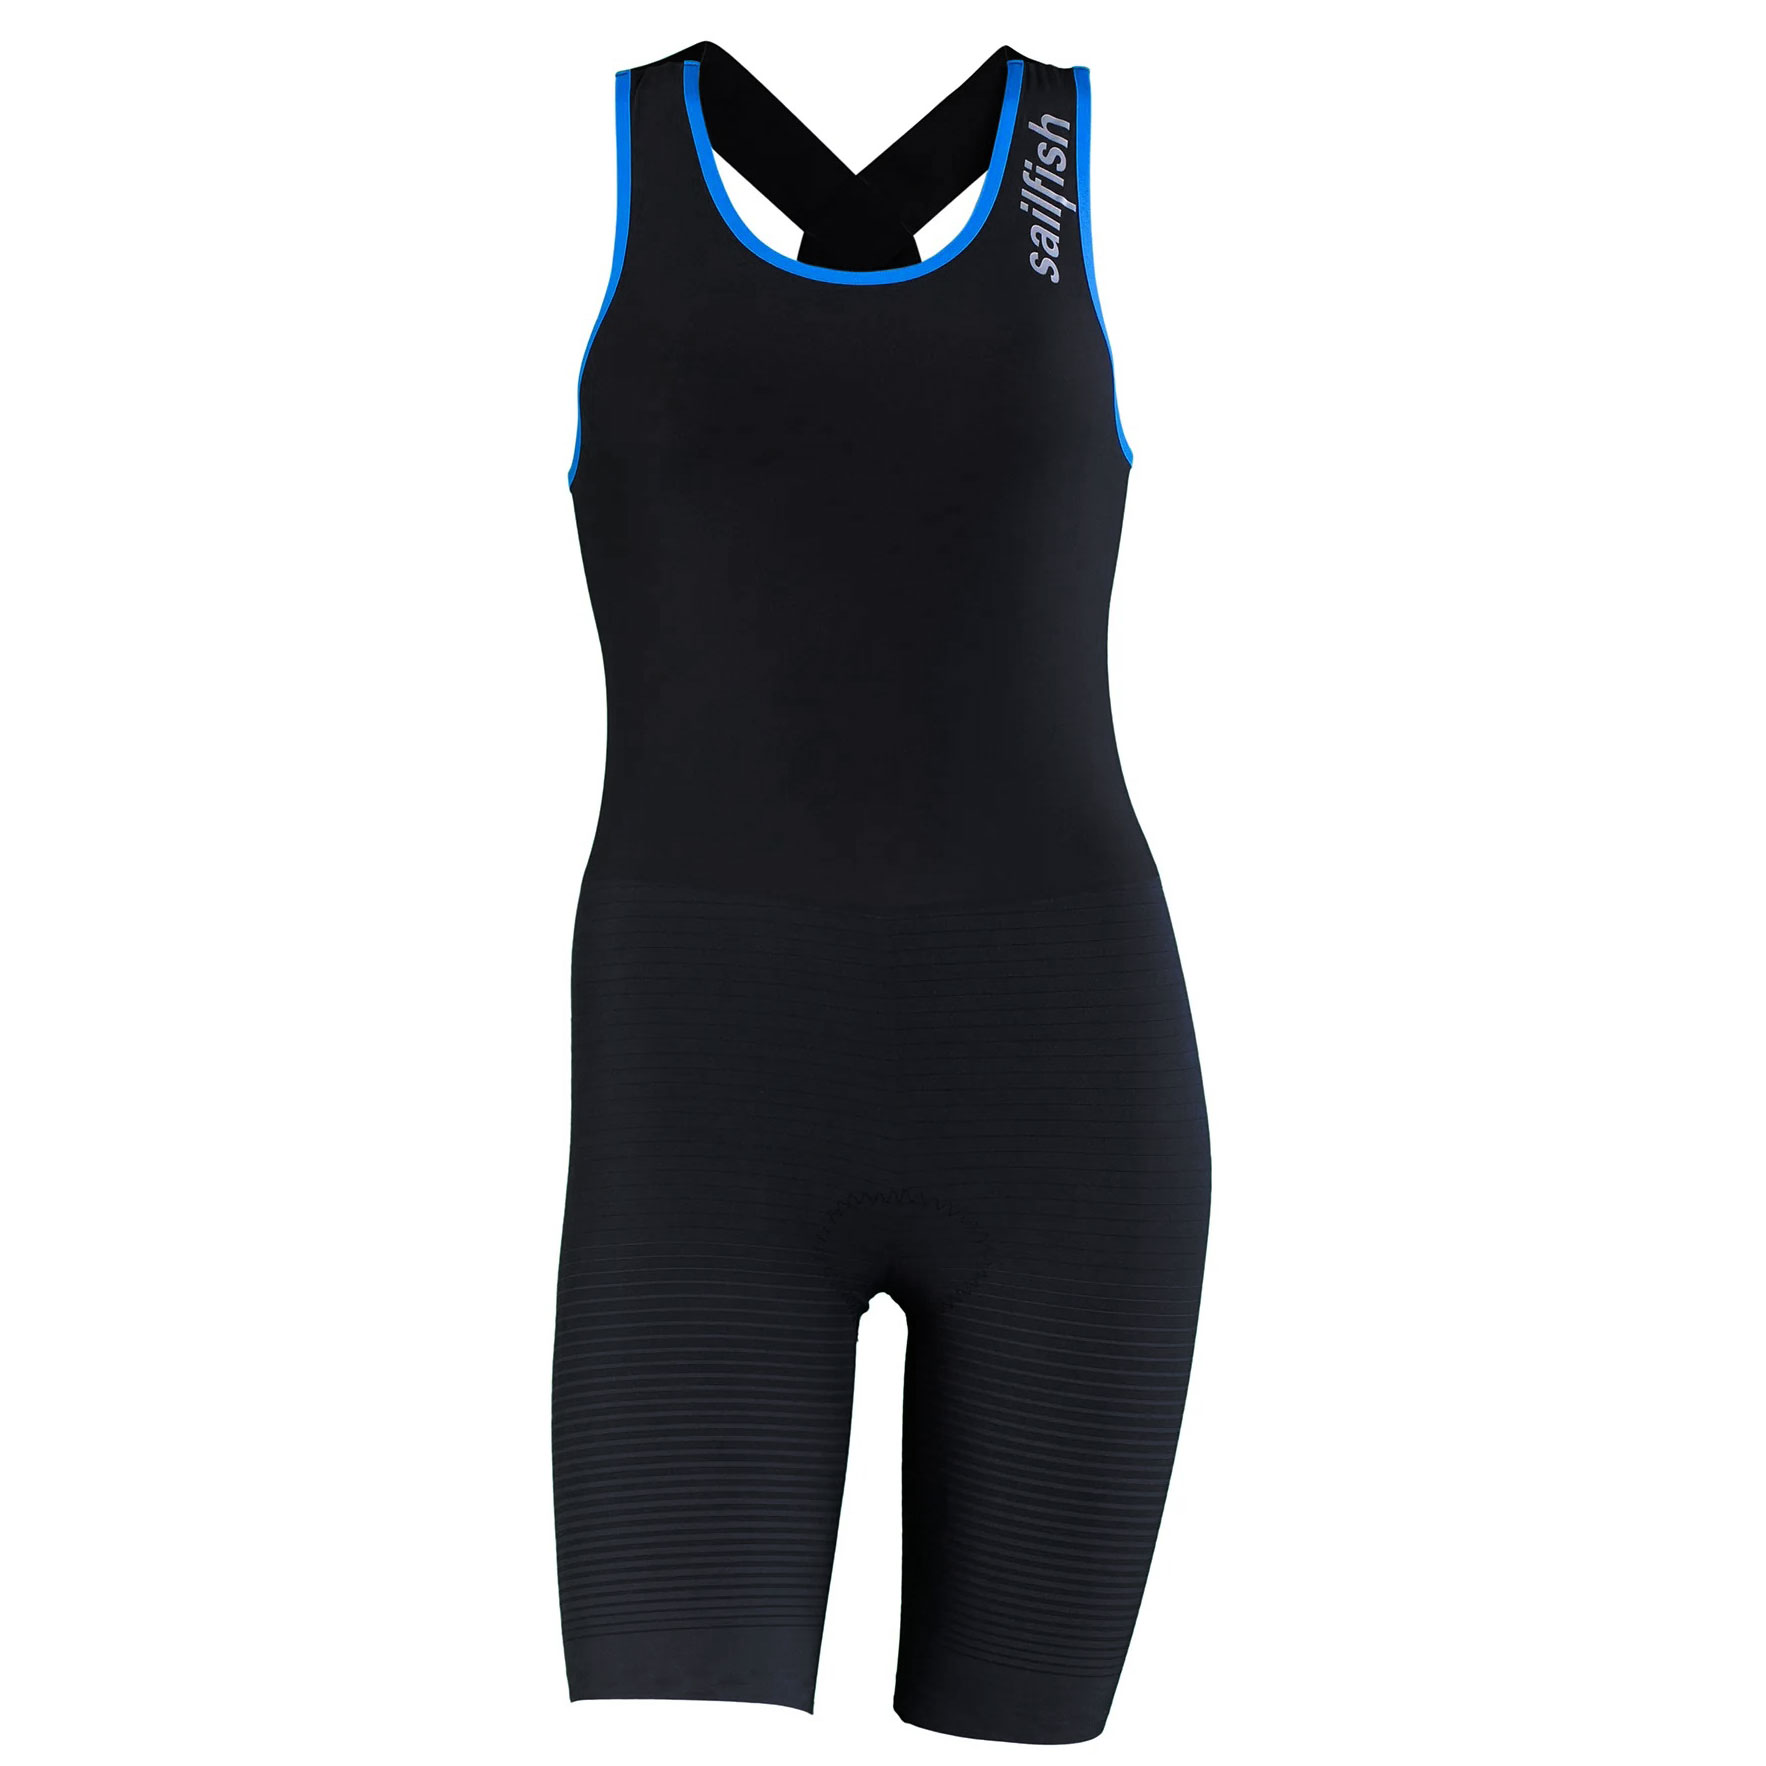 Produktbild von sailfish Trisuit Pro 2 Triathlonanzug Damen - schwarz